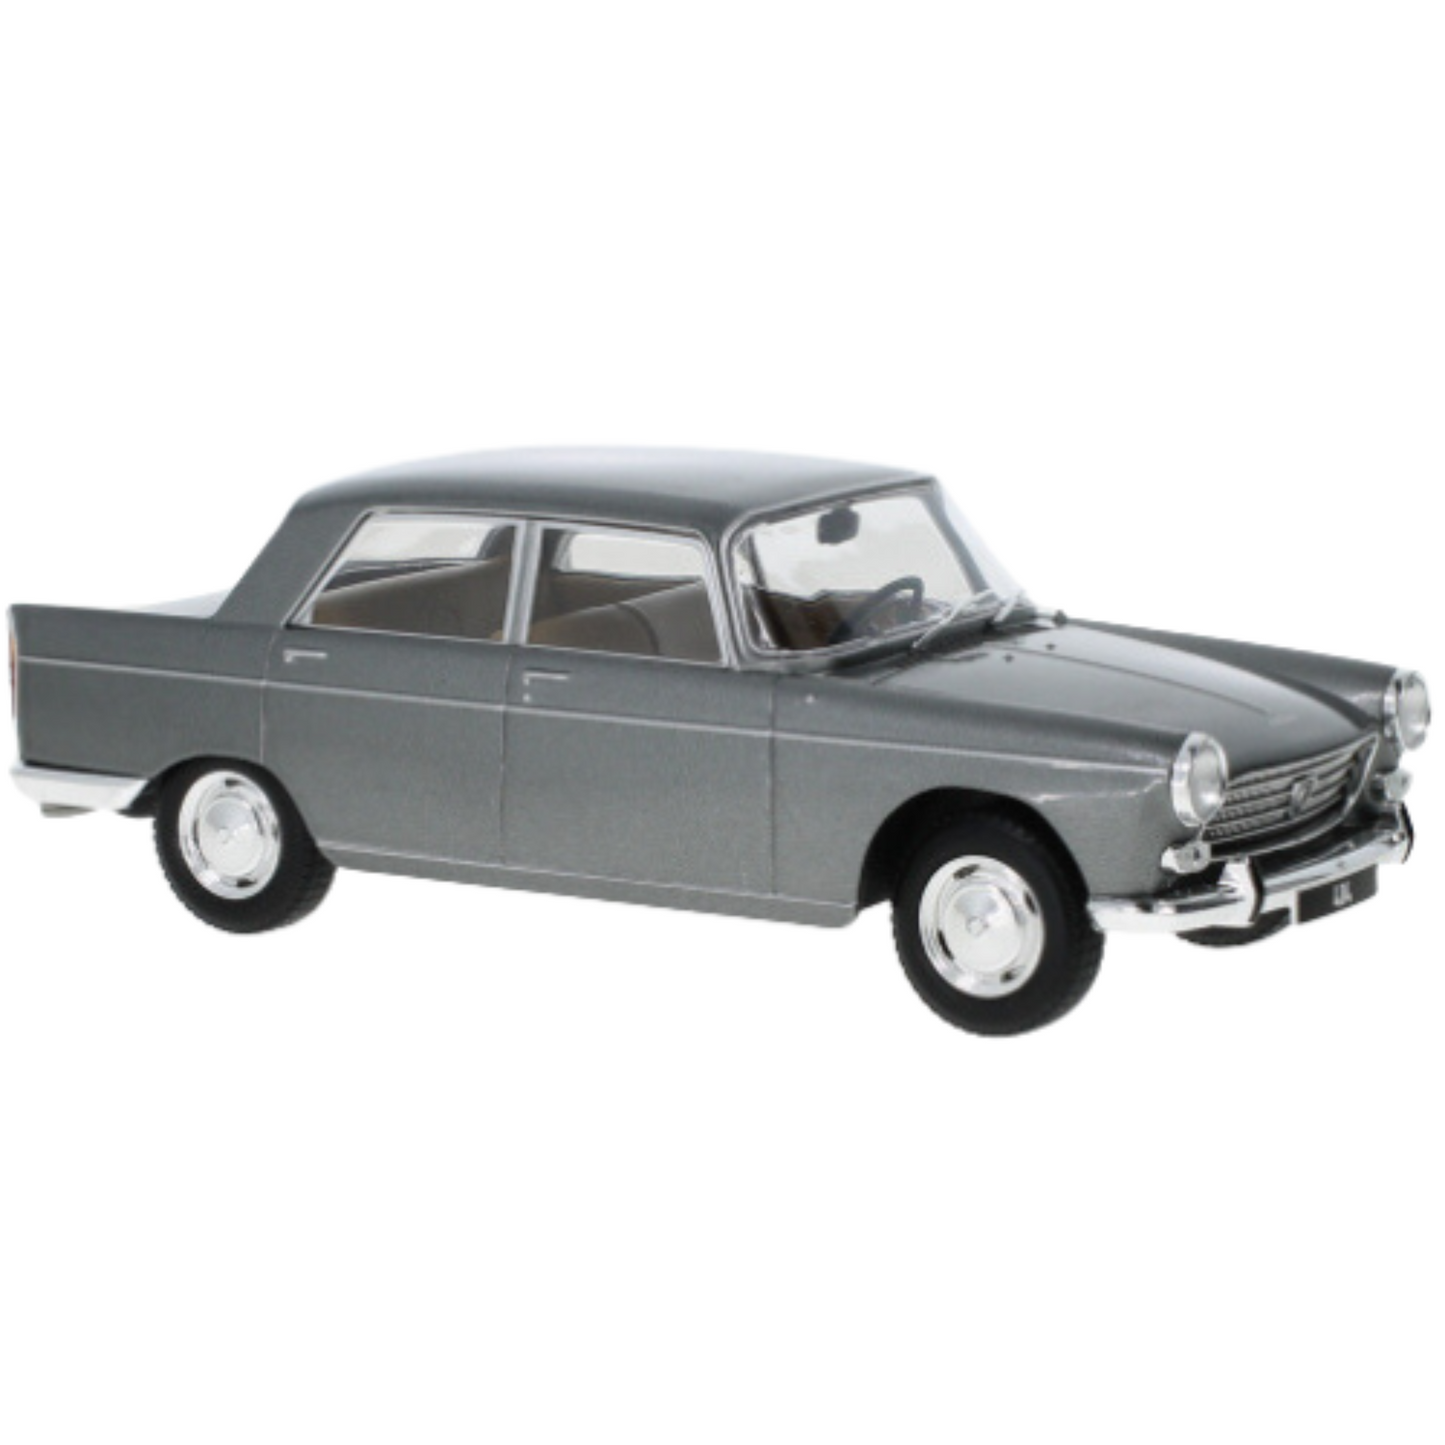 Voiture miniature de collection Peugeot 404